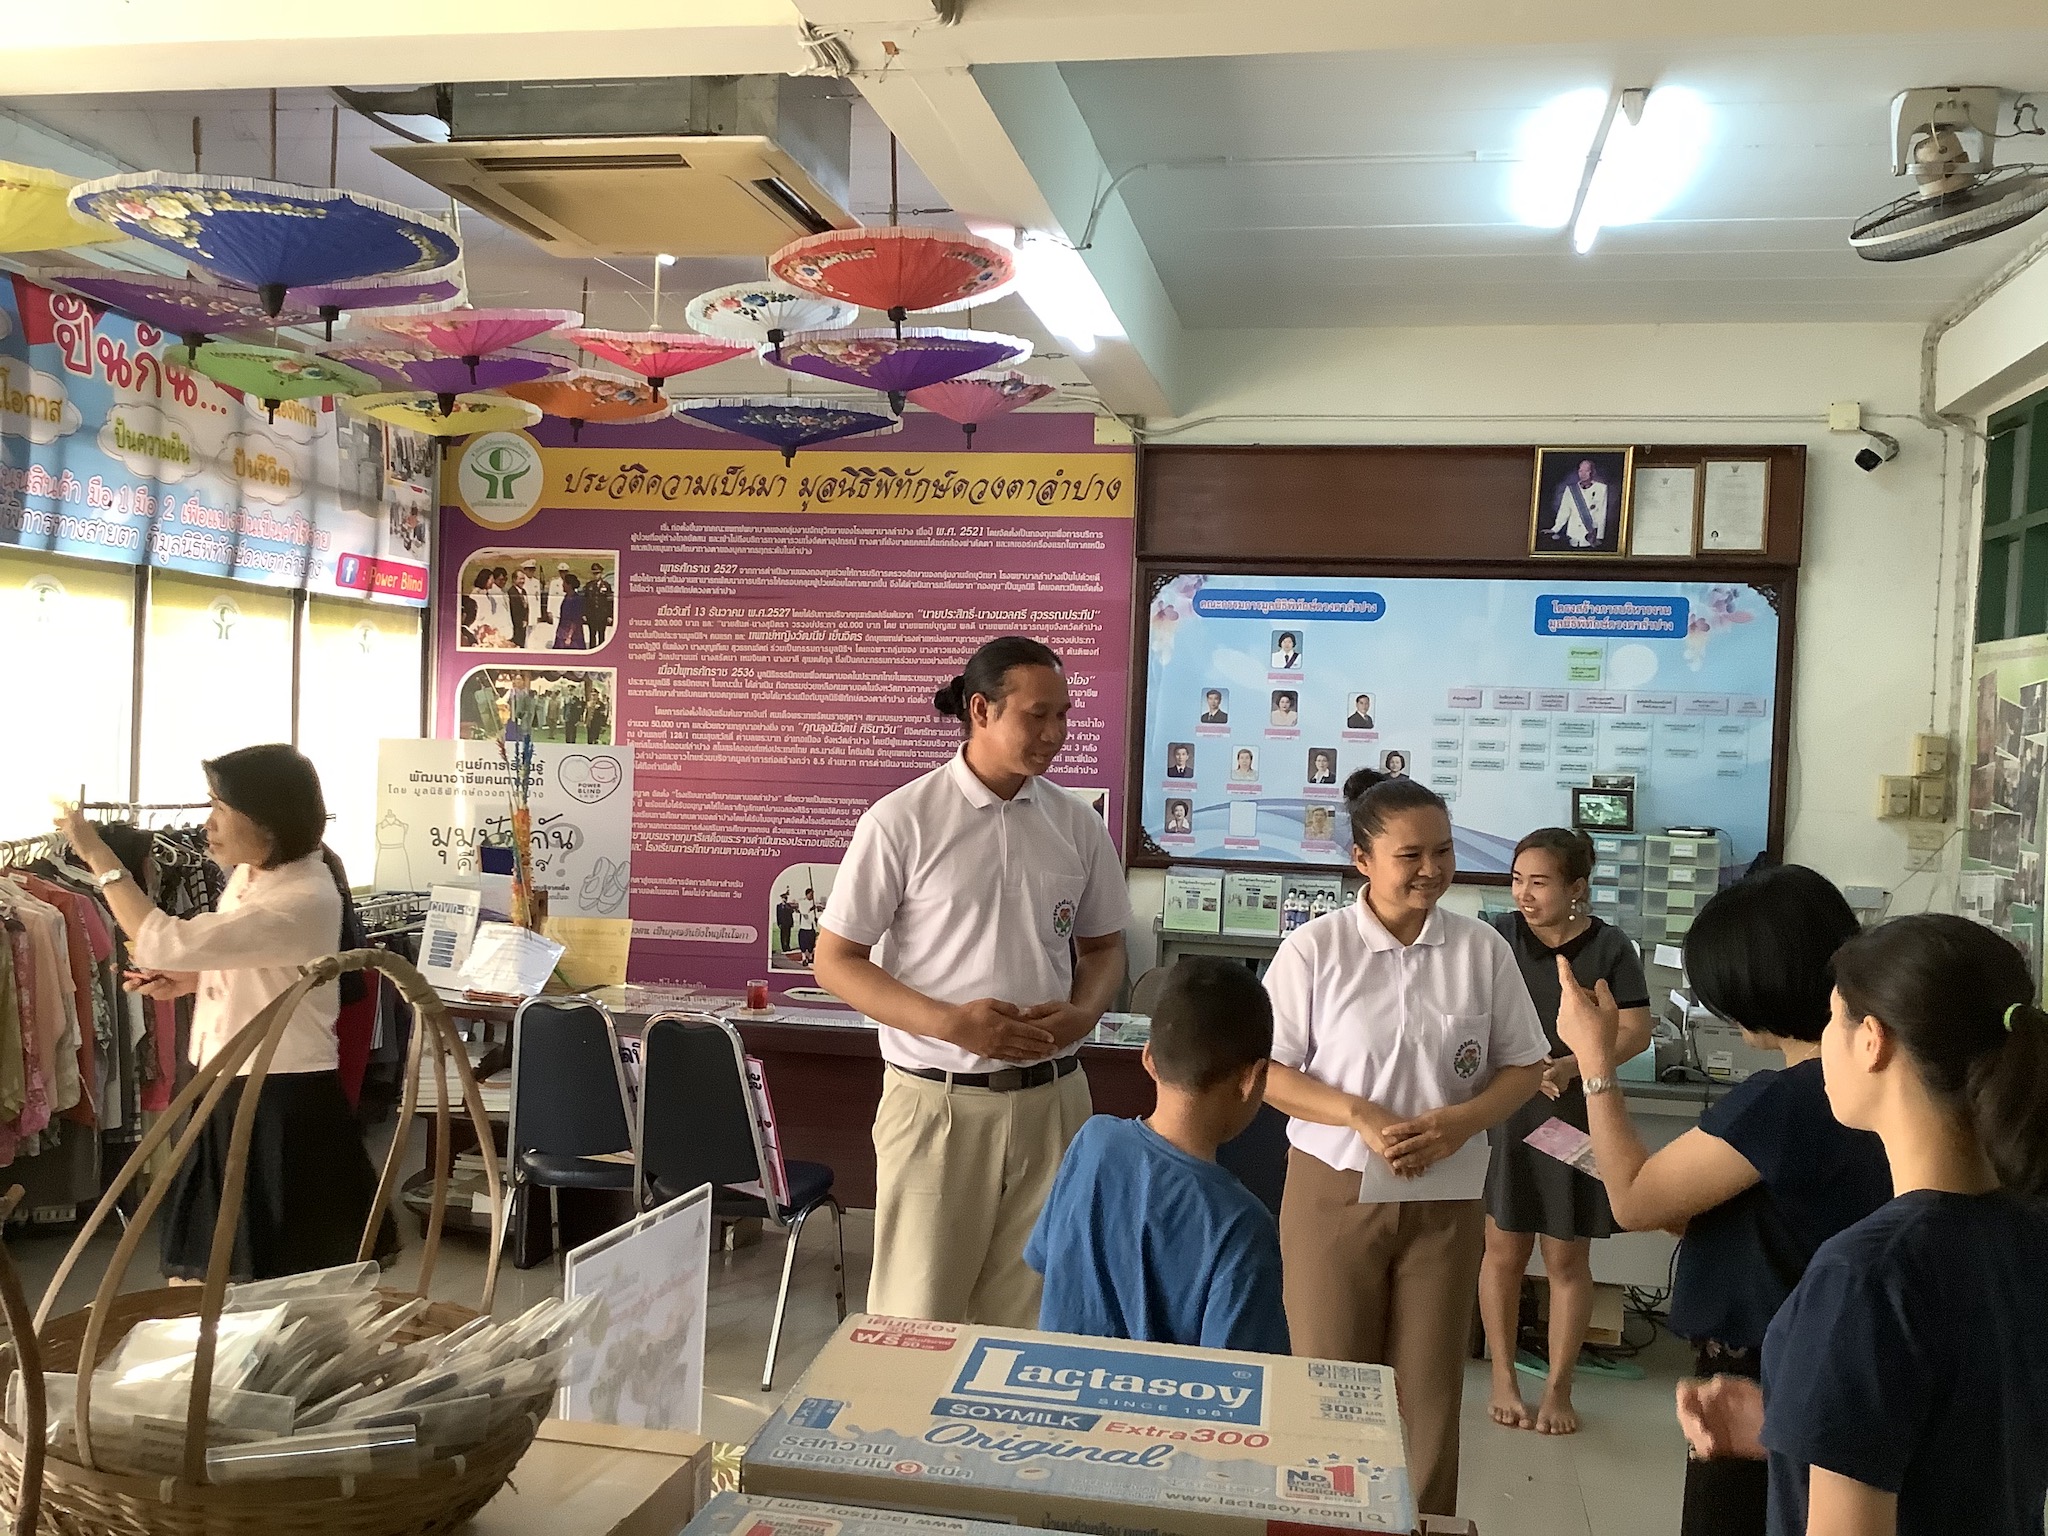 โครงการมอบทุนช่วยเหลือผู้พิการ วันที่ 19 มีนาคม 2563 ณ โรงเรียนการศึกษาคนตาบอดลำปาง  ต.พระบาท  อ.เมืองลำปาง  จ.ลำปาง